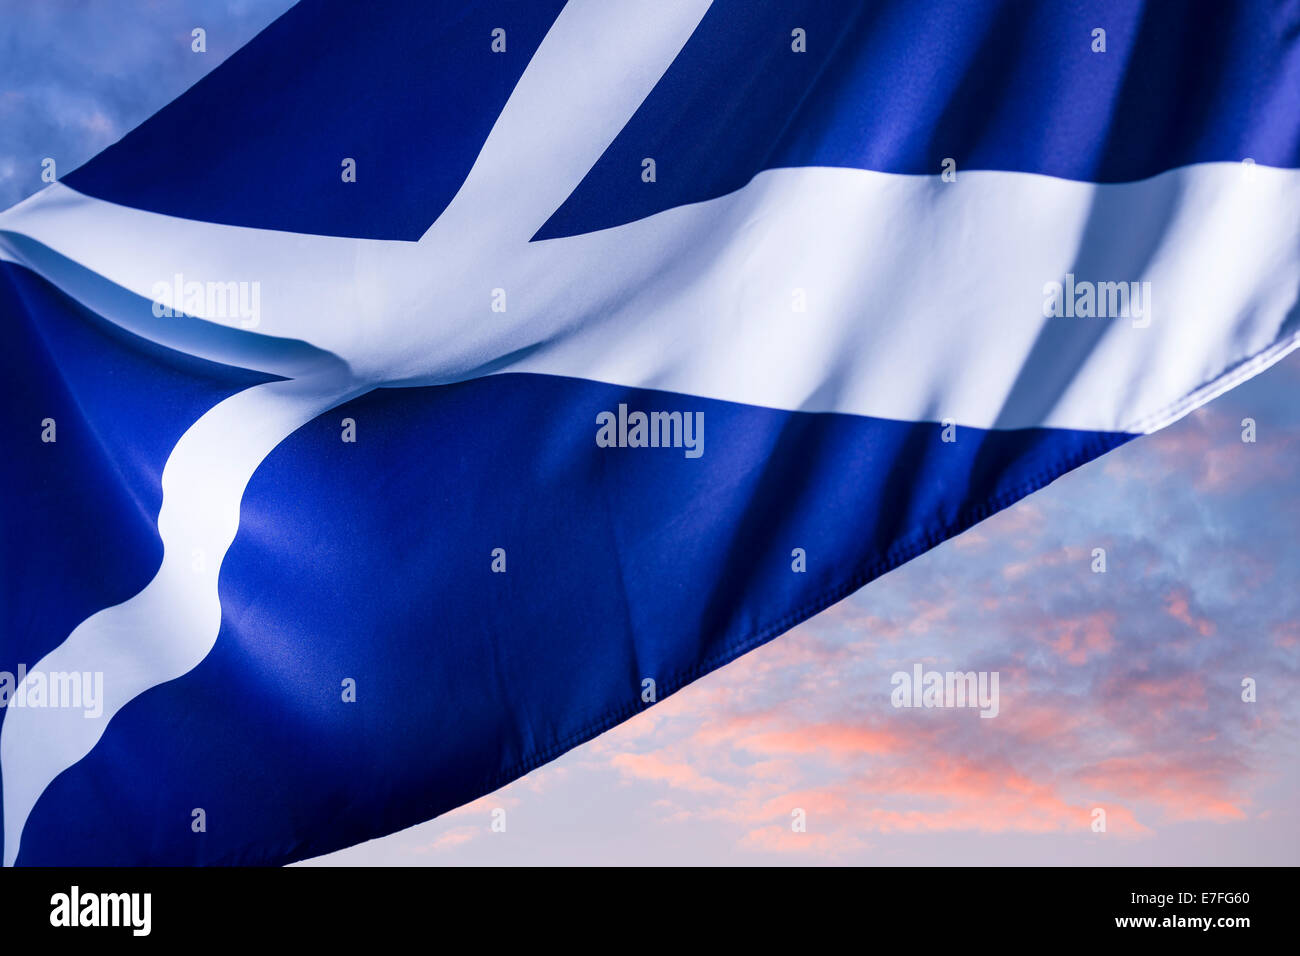 Dawn, Sautoir écossais - drapeau écossais Banque D'Images